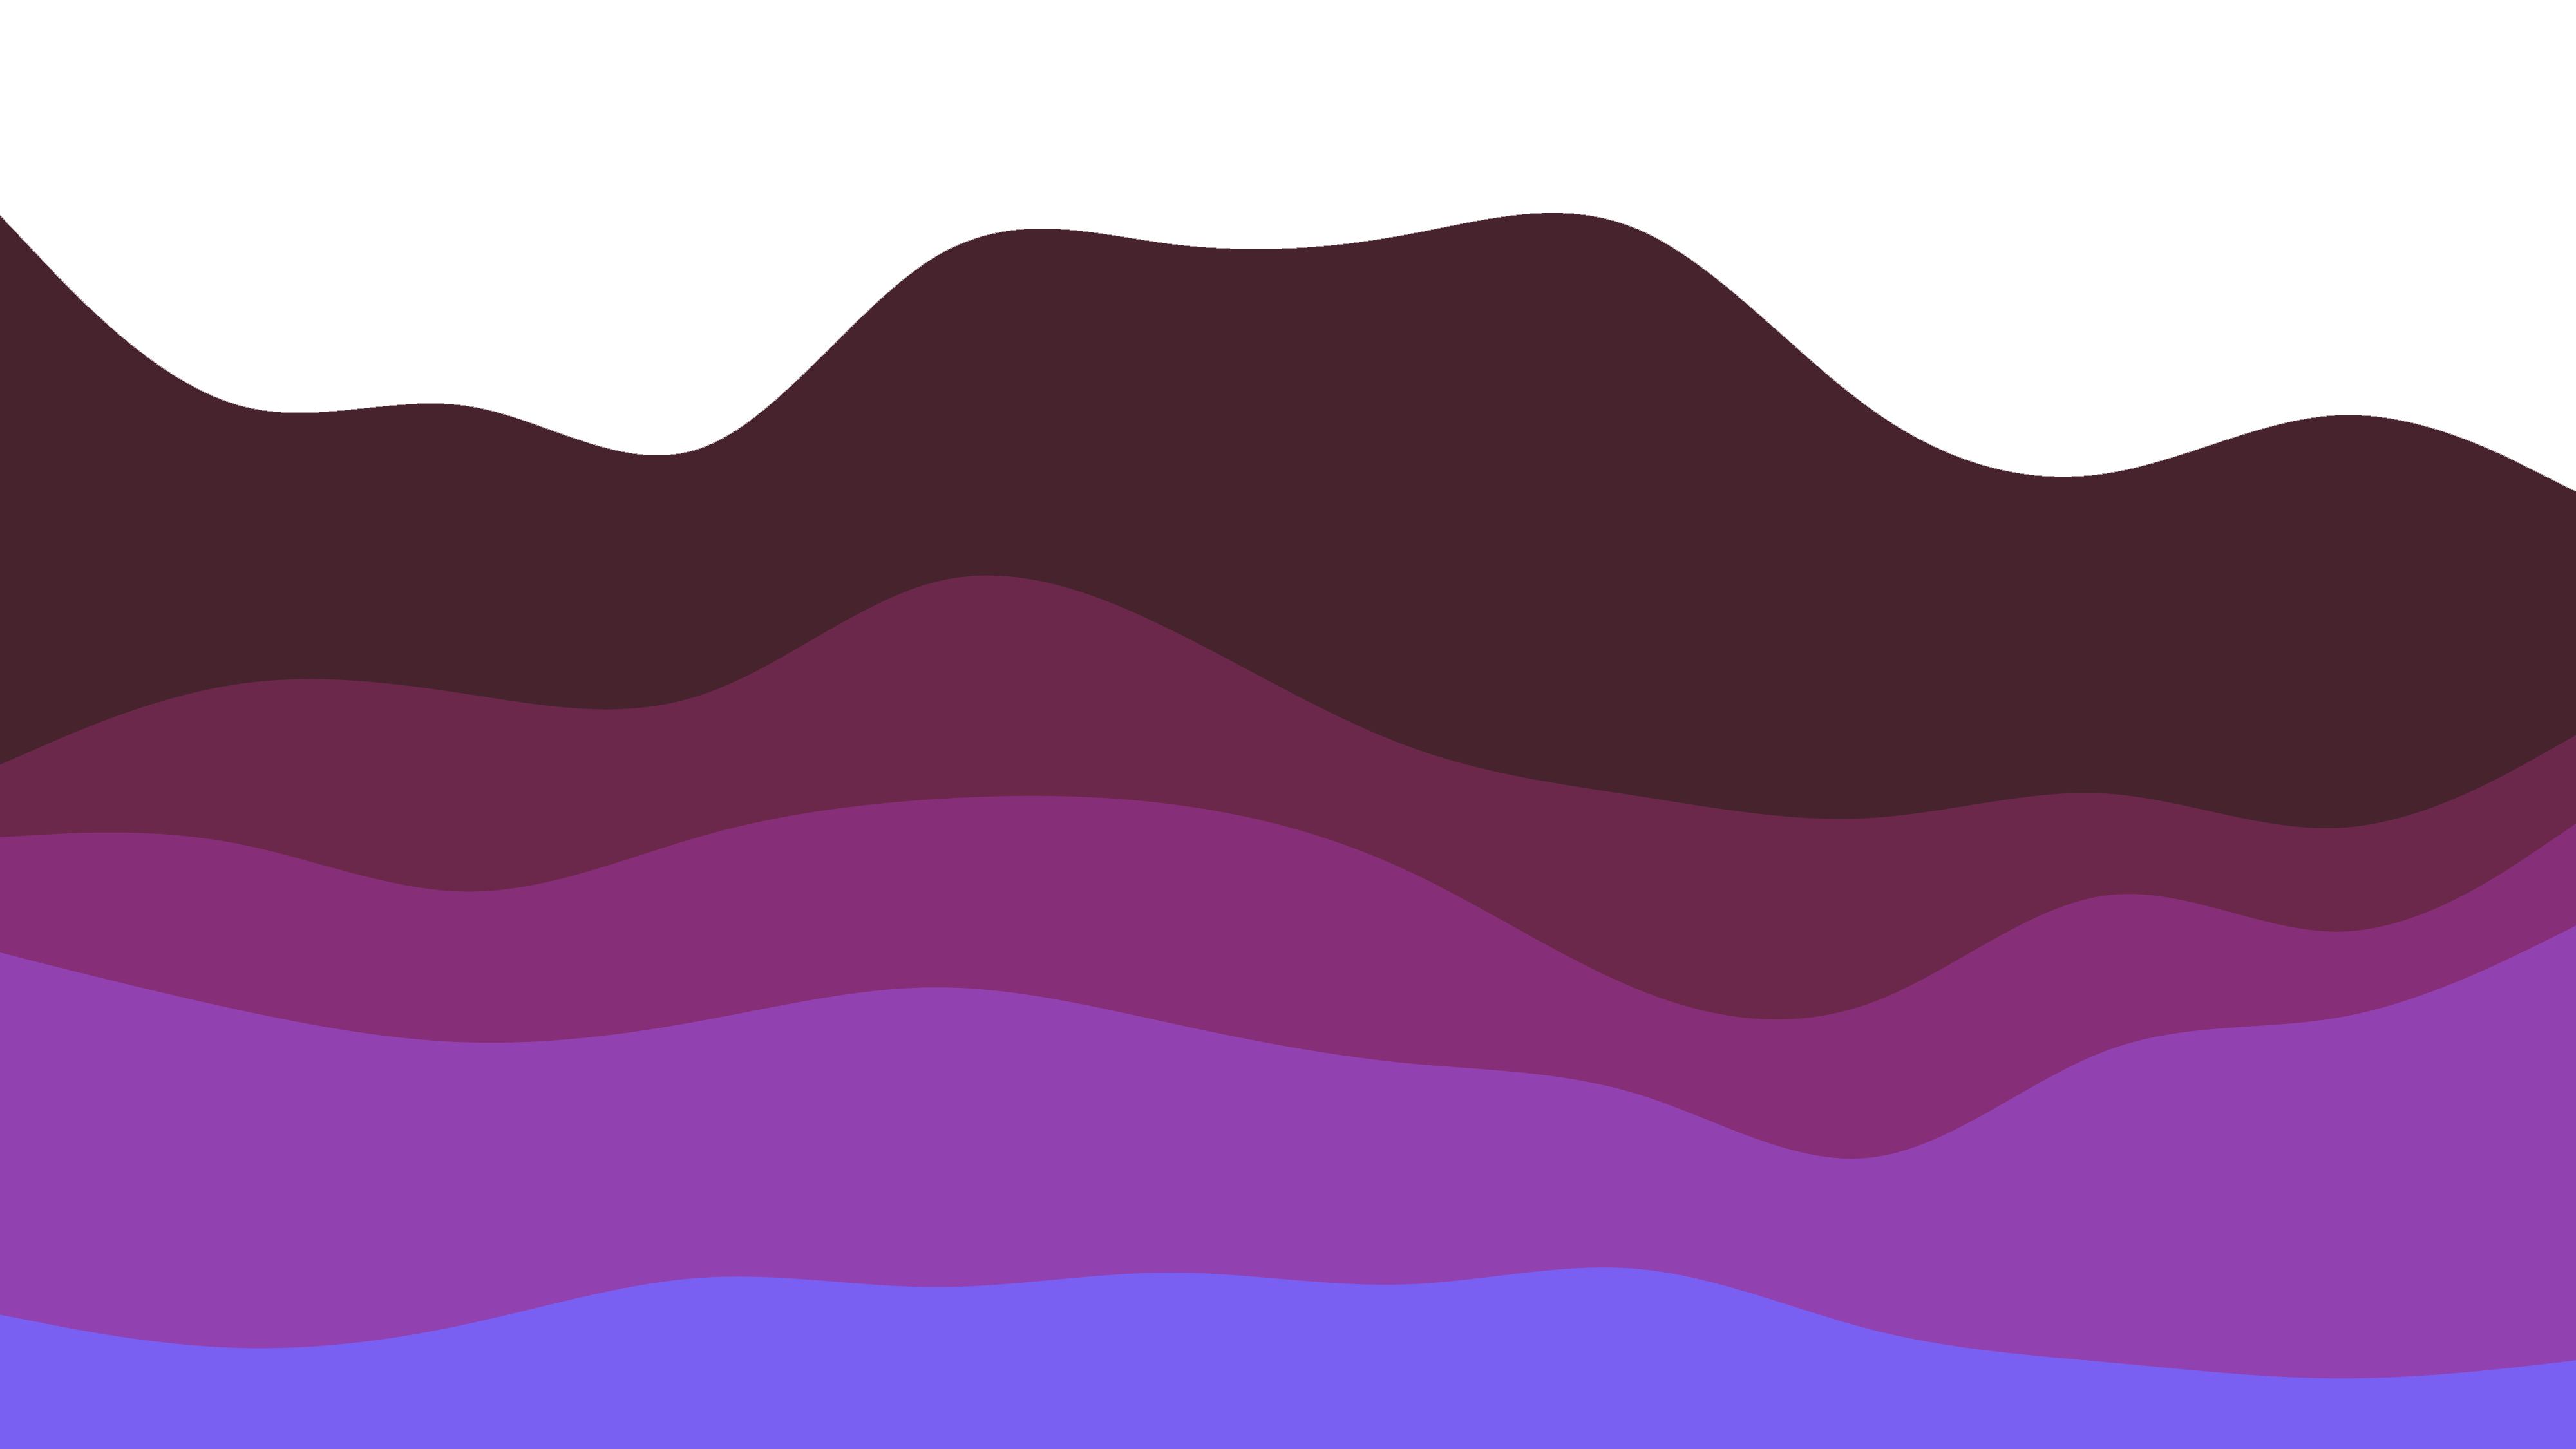 Lavender Waves